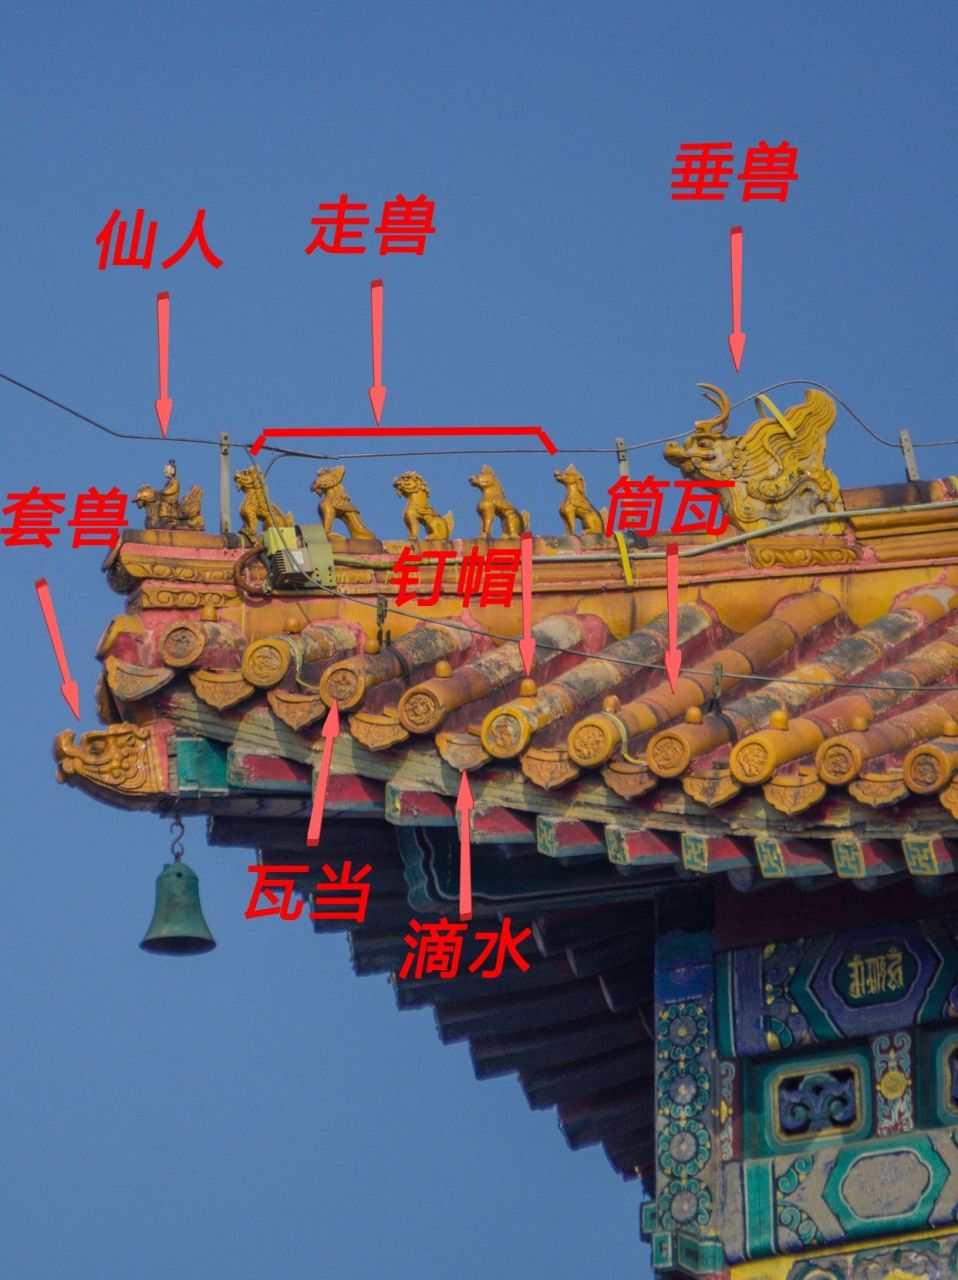 7815 古建筑屋顶位于中国式三段的上段,最为引人注目